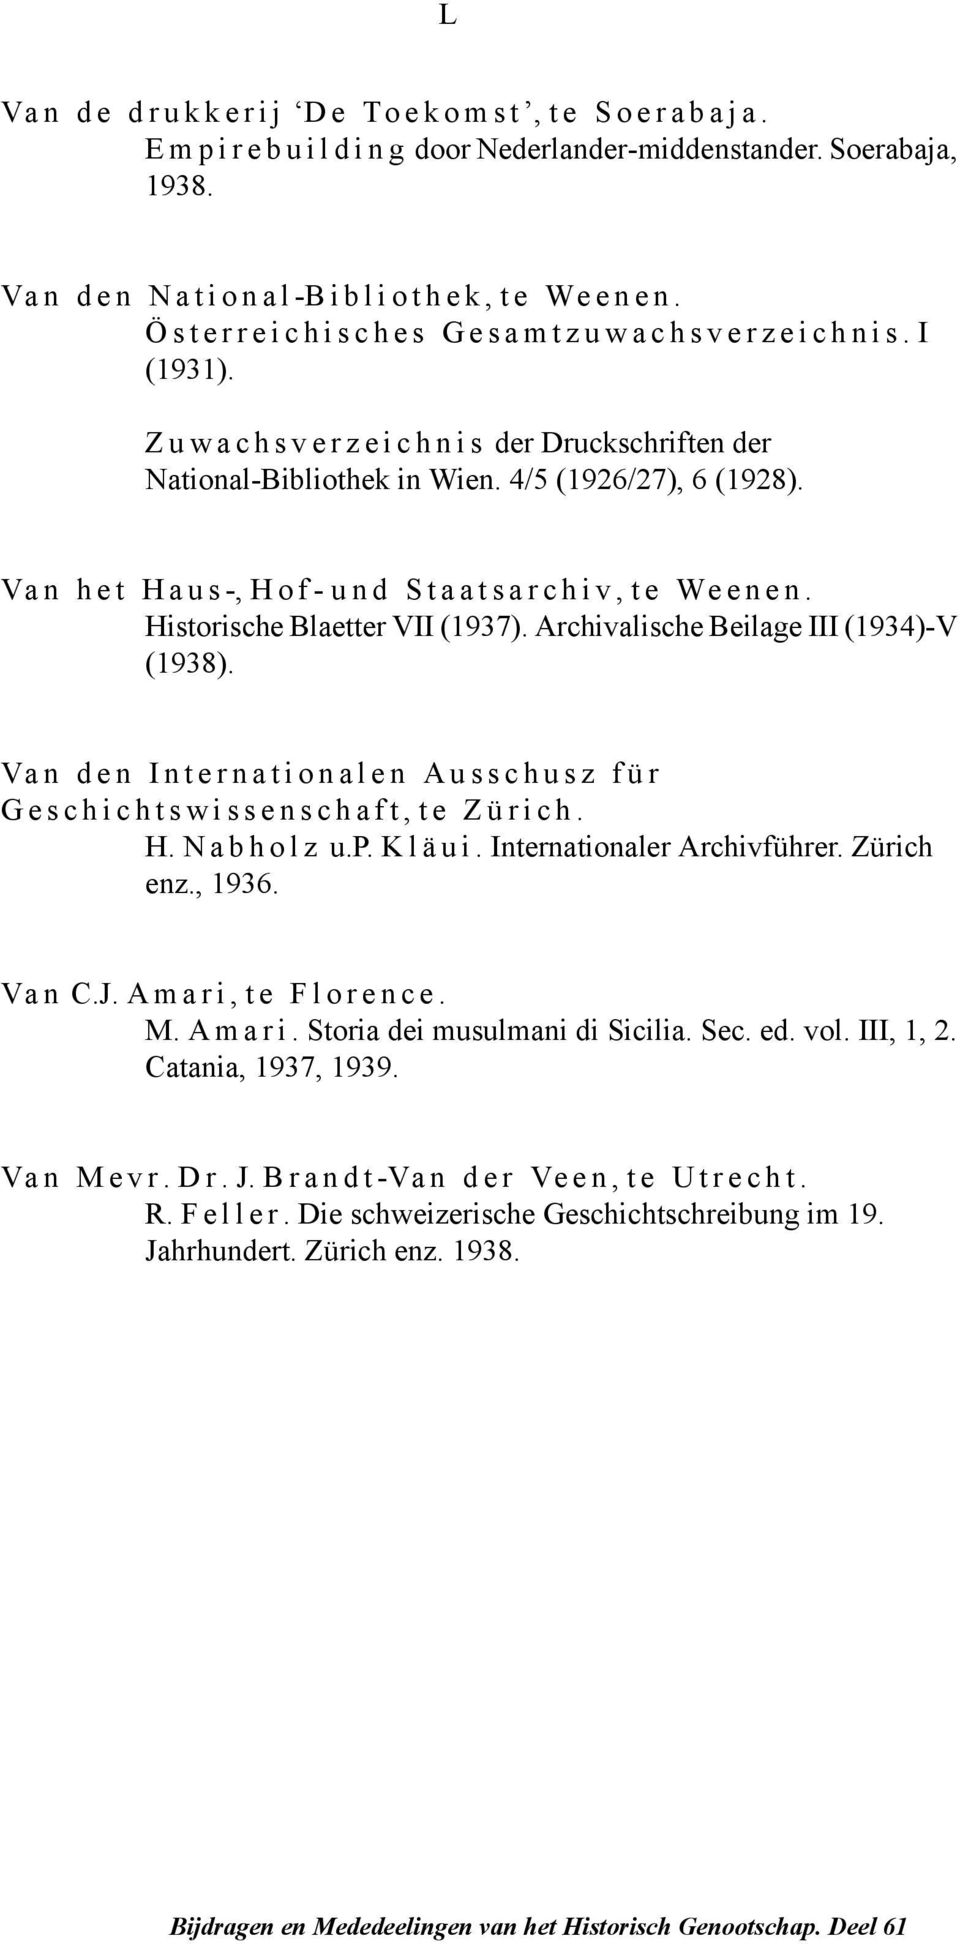 Archivalische Beilage III (1934)-V (1938). Van den Internationalen Ausschusz für Geschichtswissenschaft, te Zürich. H. Nabholz u.p. Kläui. Internationaler Archivführer. Zürich enz., 1936. Van C.J.